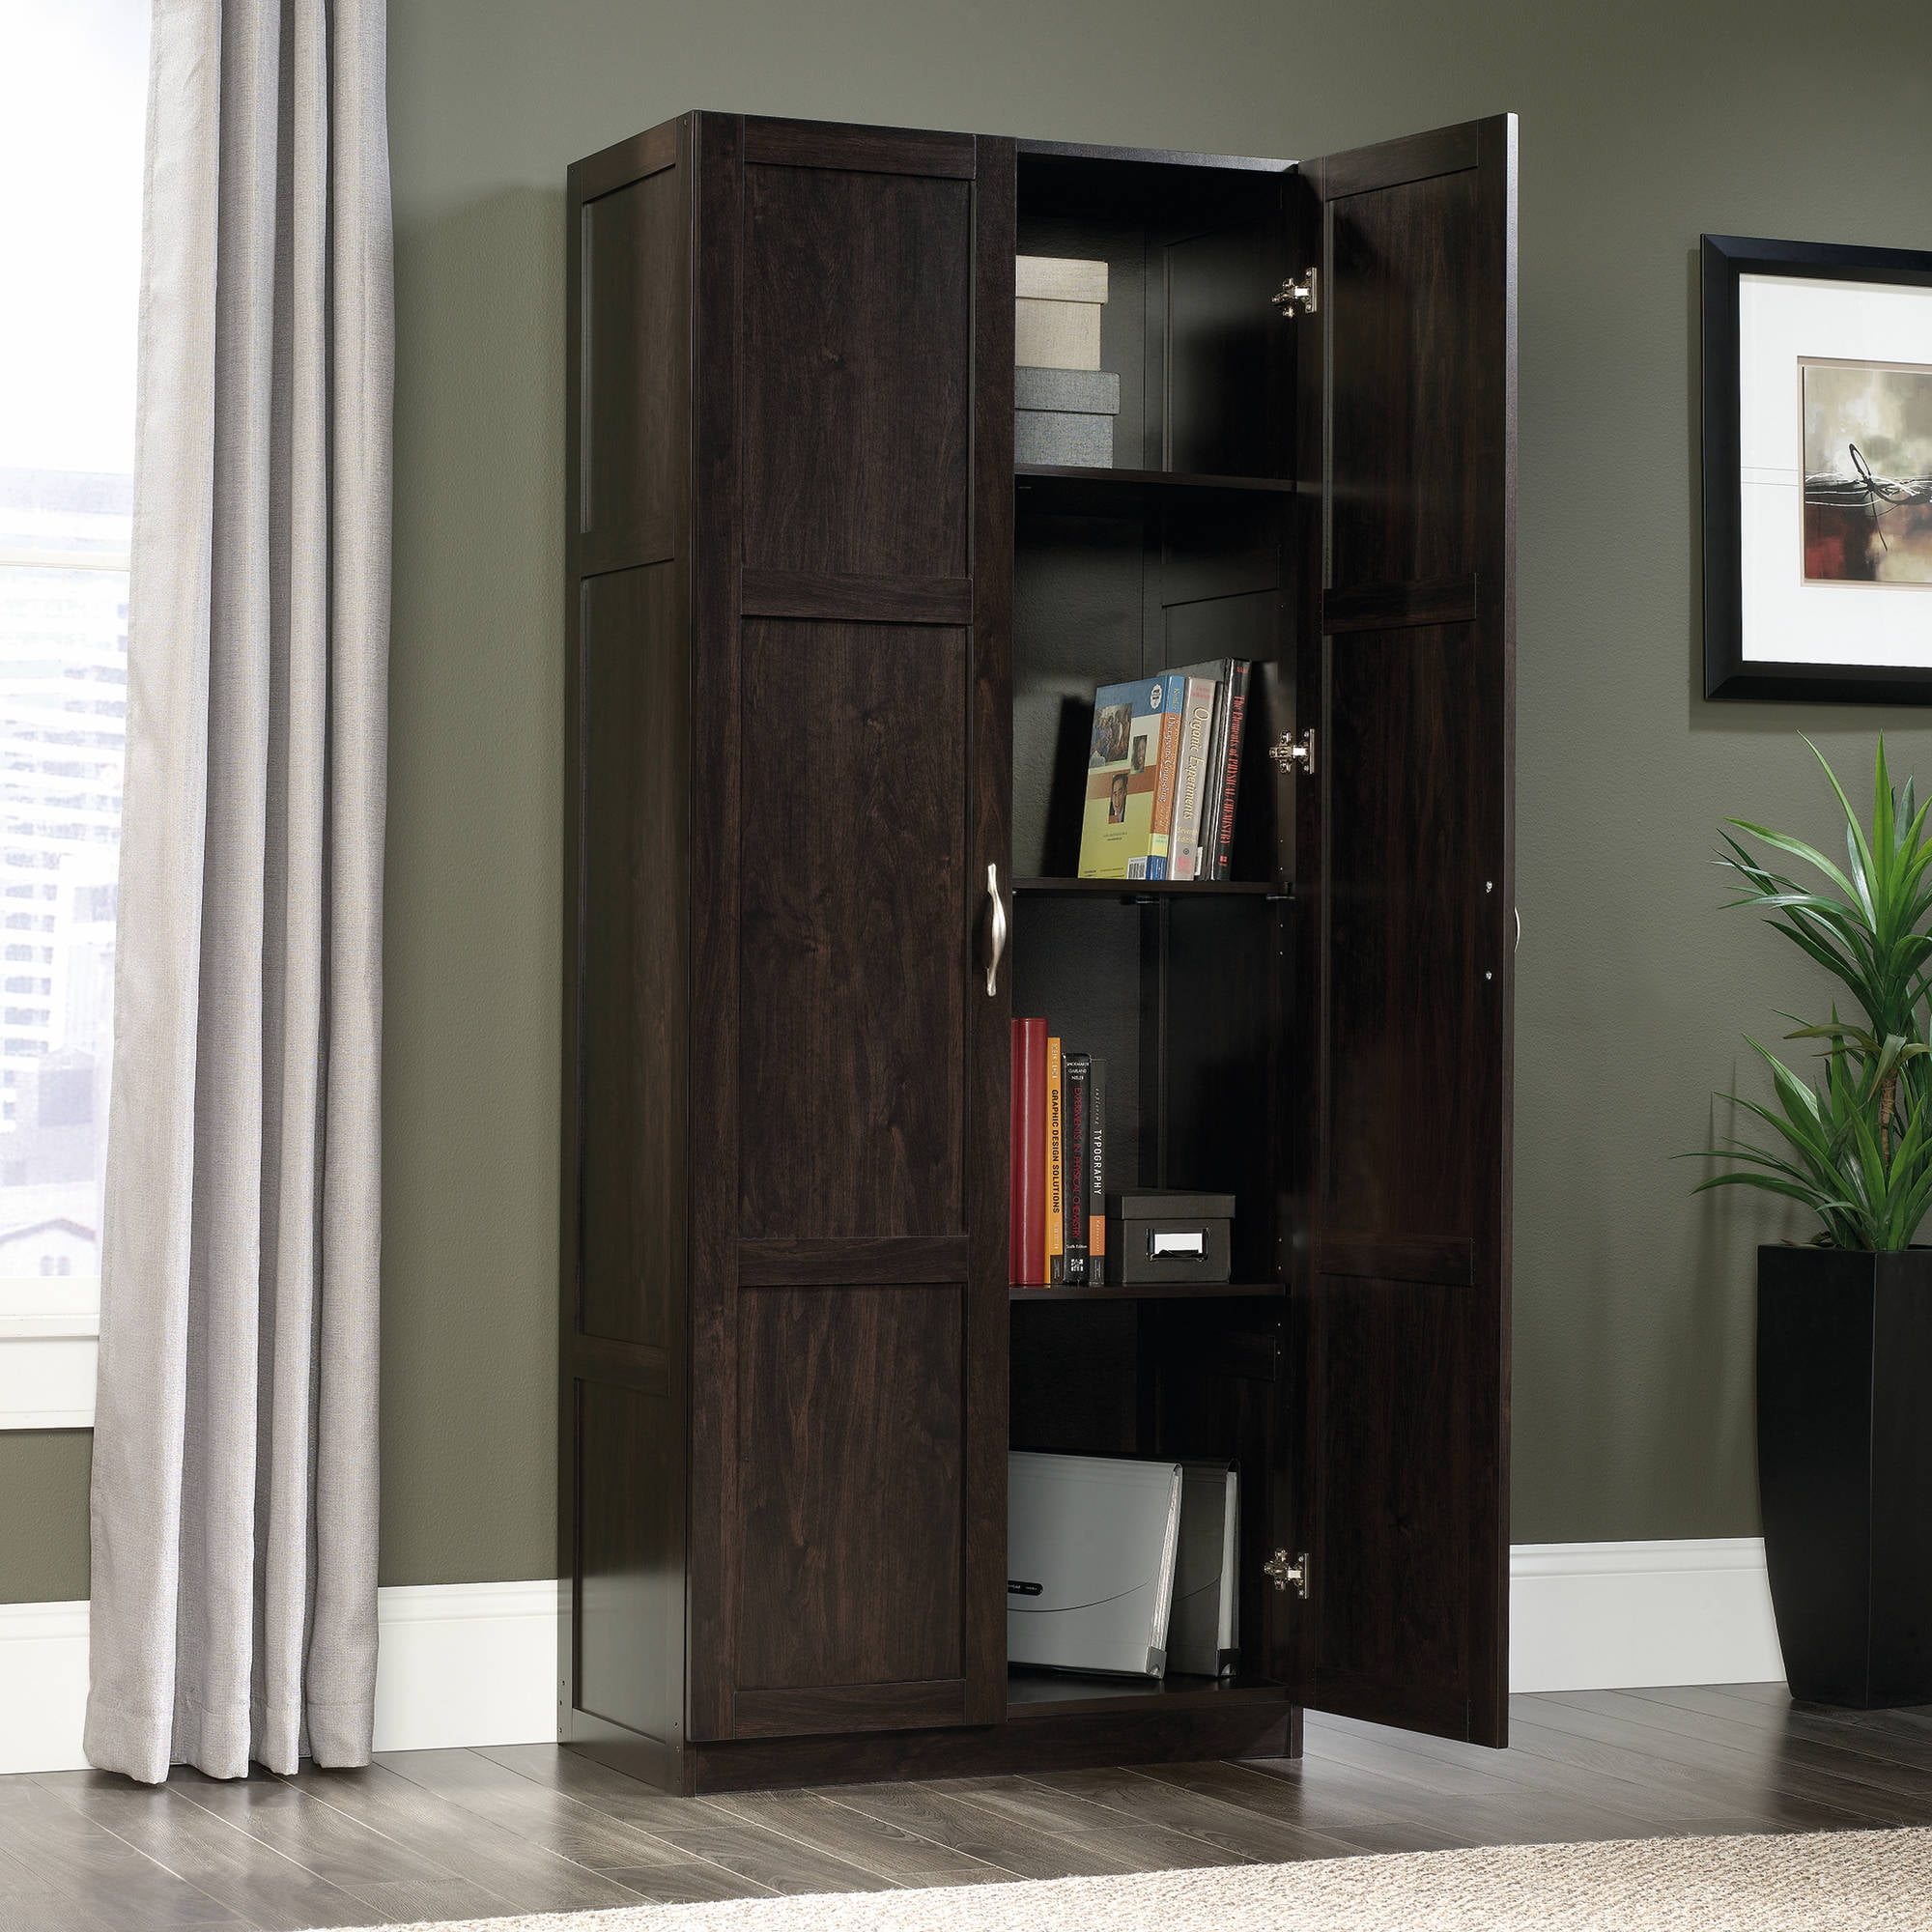 Sauder Select 2 Door Tall Storage, Kitchen Storage Cabinets Cherry Wood